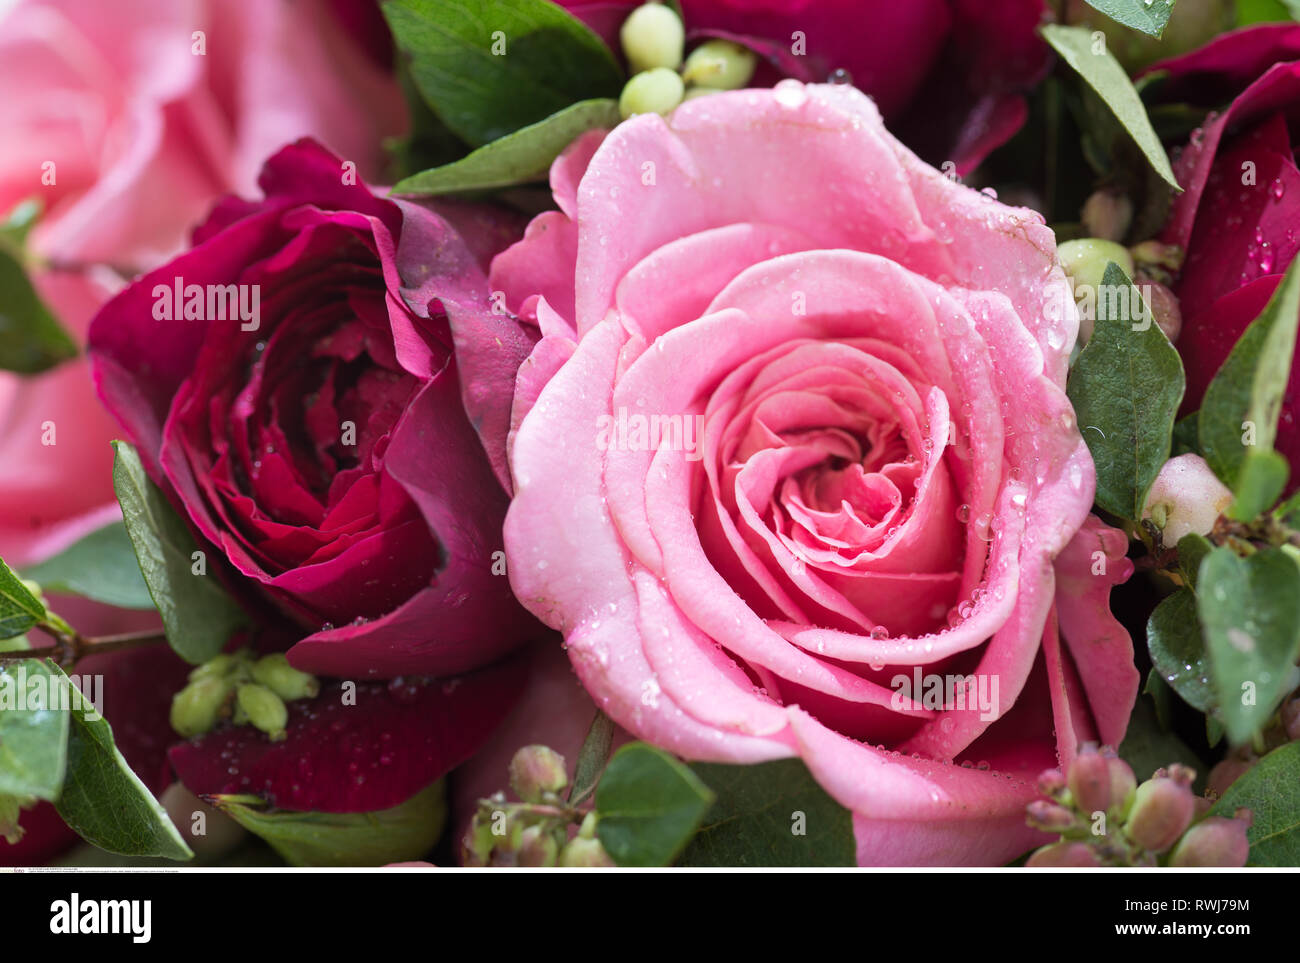 Botanik, rund gebunden Blumenstrauß aus Rosen, Vorsicht! Für Greetingcard-Use/Postcard-Use in deutschsprachigen Ländern gibt es einige Einschränkungen Stockfoto